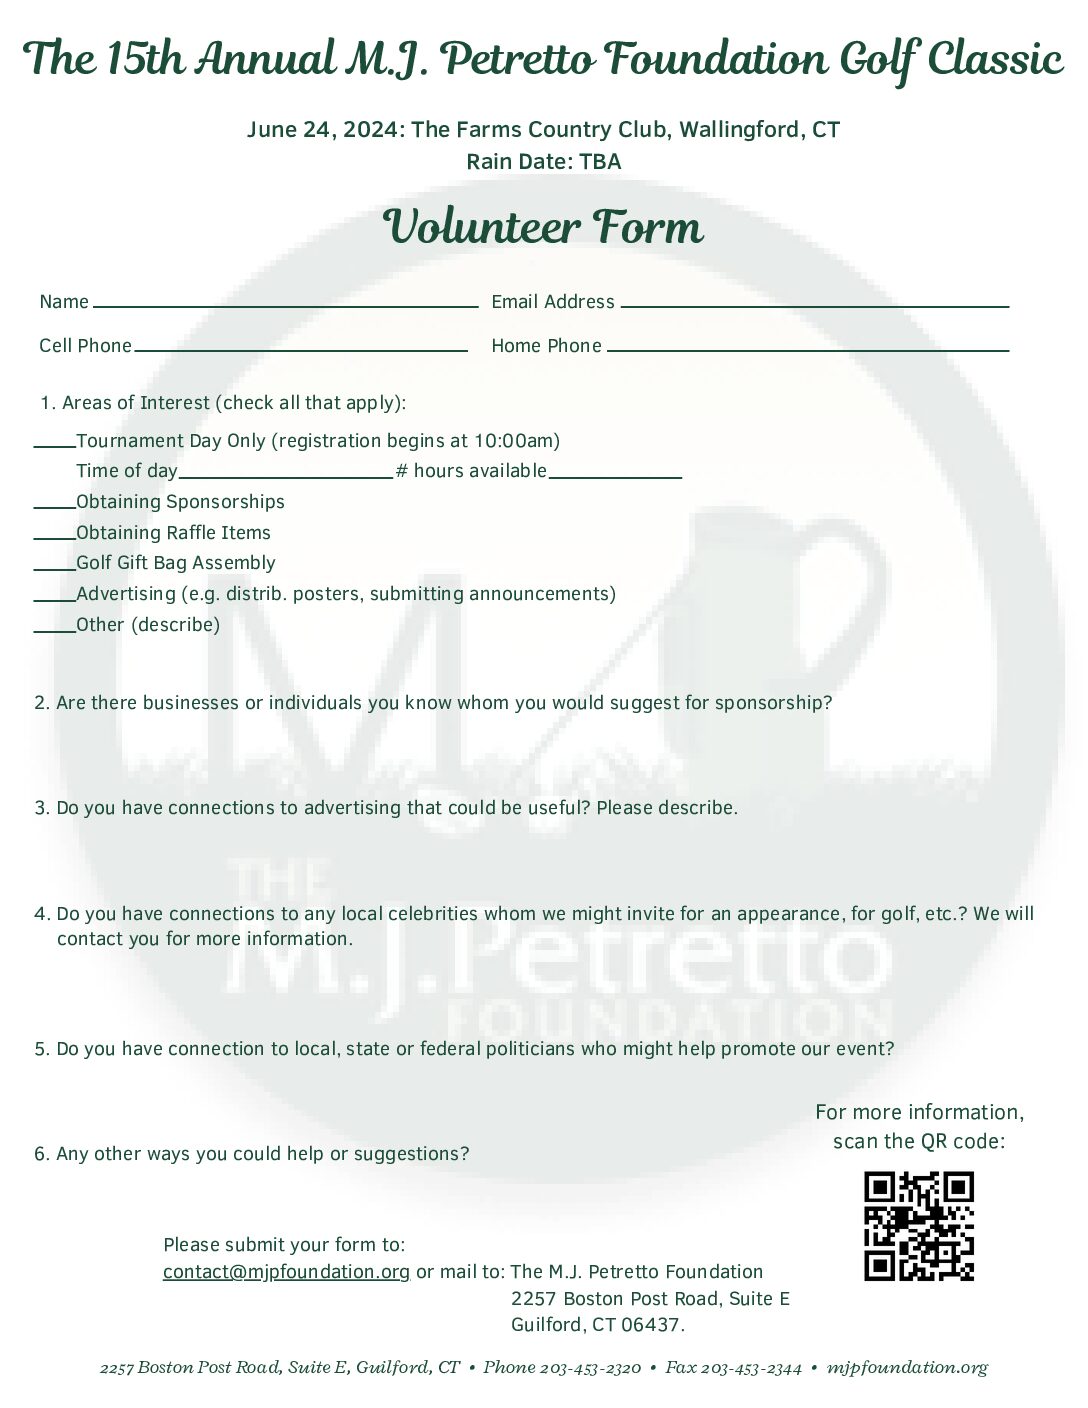 MJPF Volunteer Form